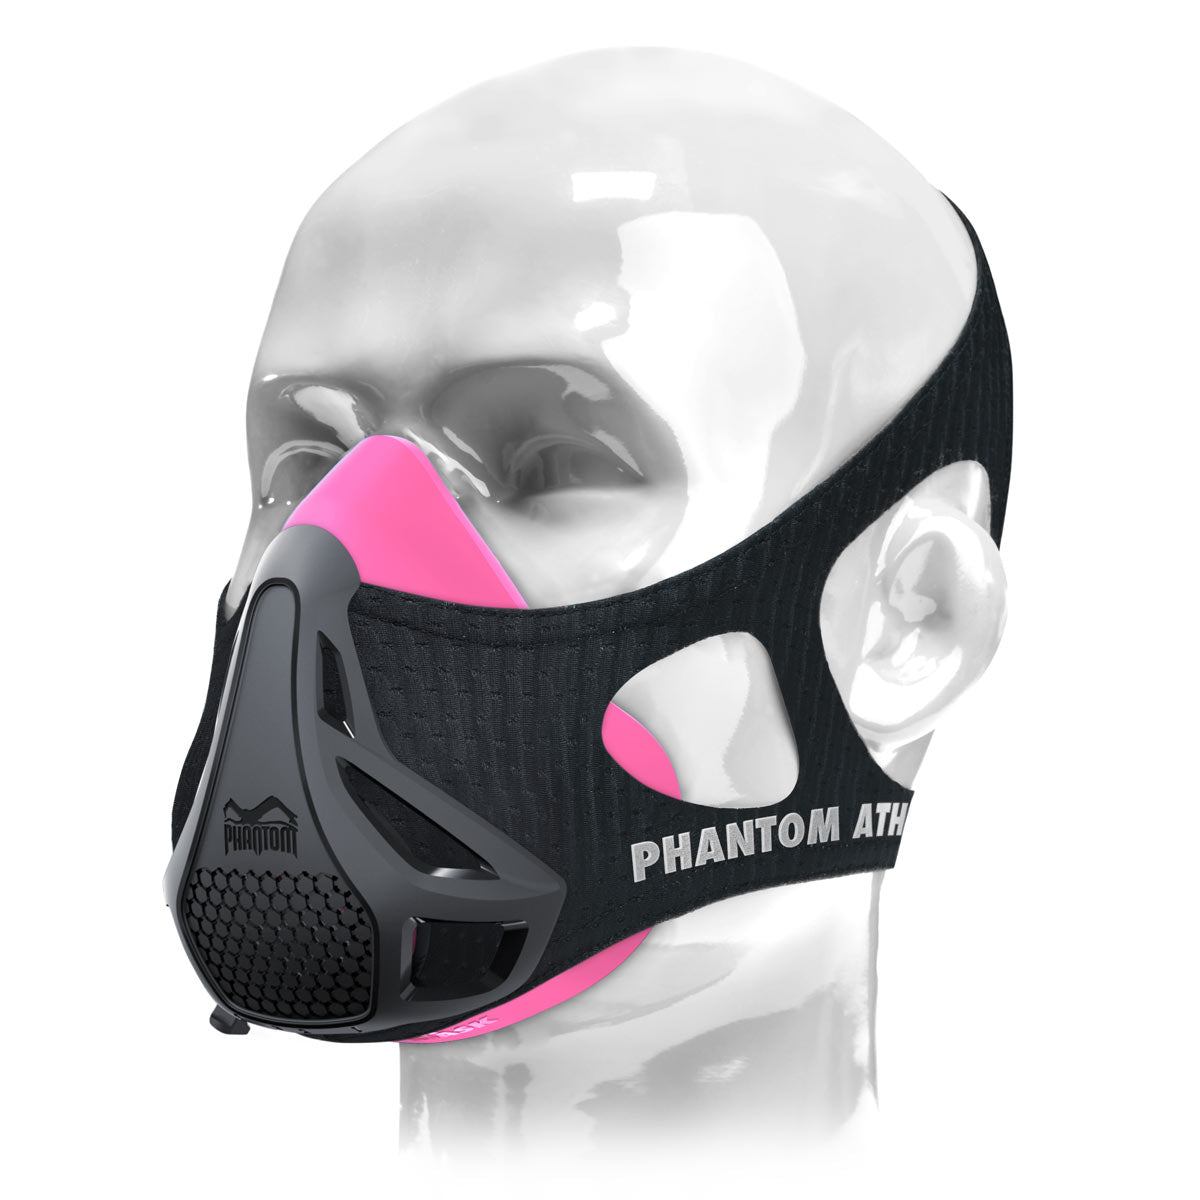 Le masque d'entraînement Phantom . L'original. Breveté et récompensé pour faire passer votre condition physique au niveau supérieur. Maintenant en rose/noir.